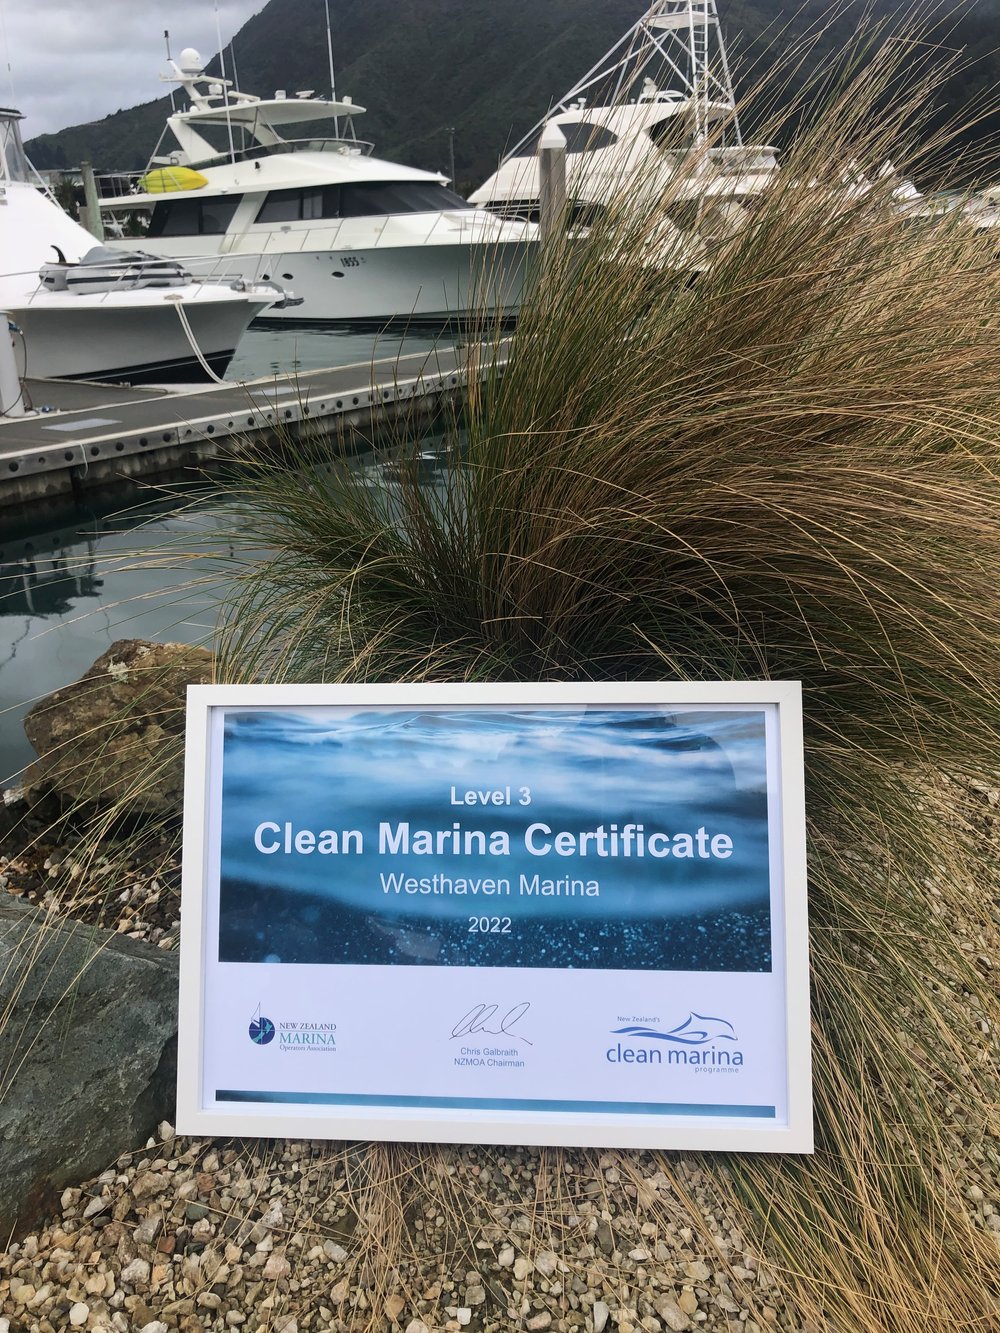 Clean Marina Certificate.jpeg